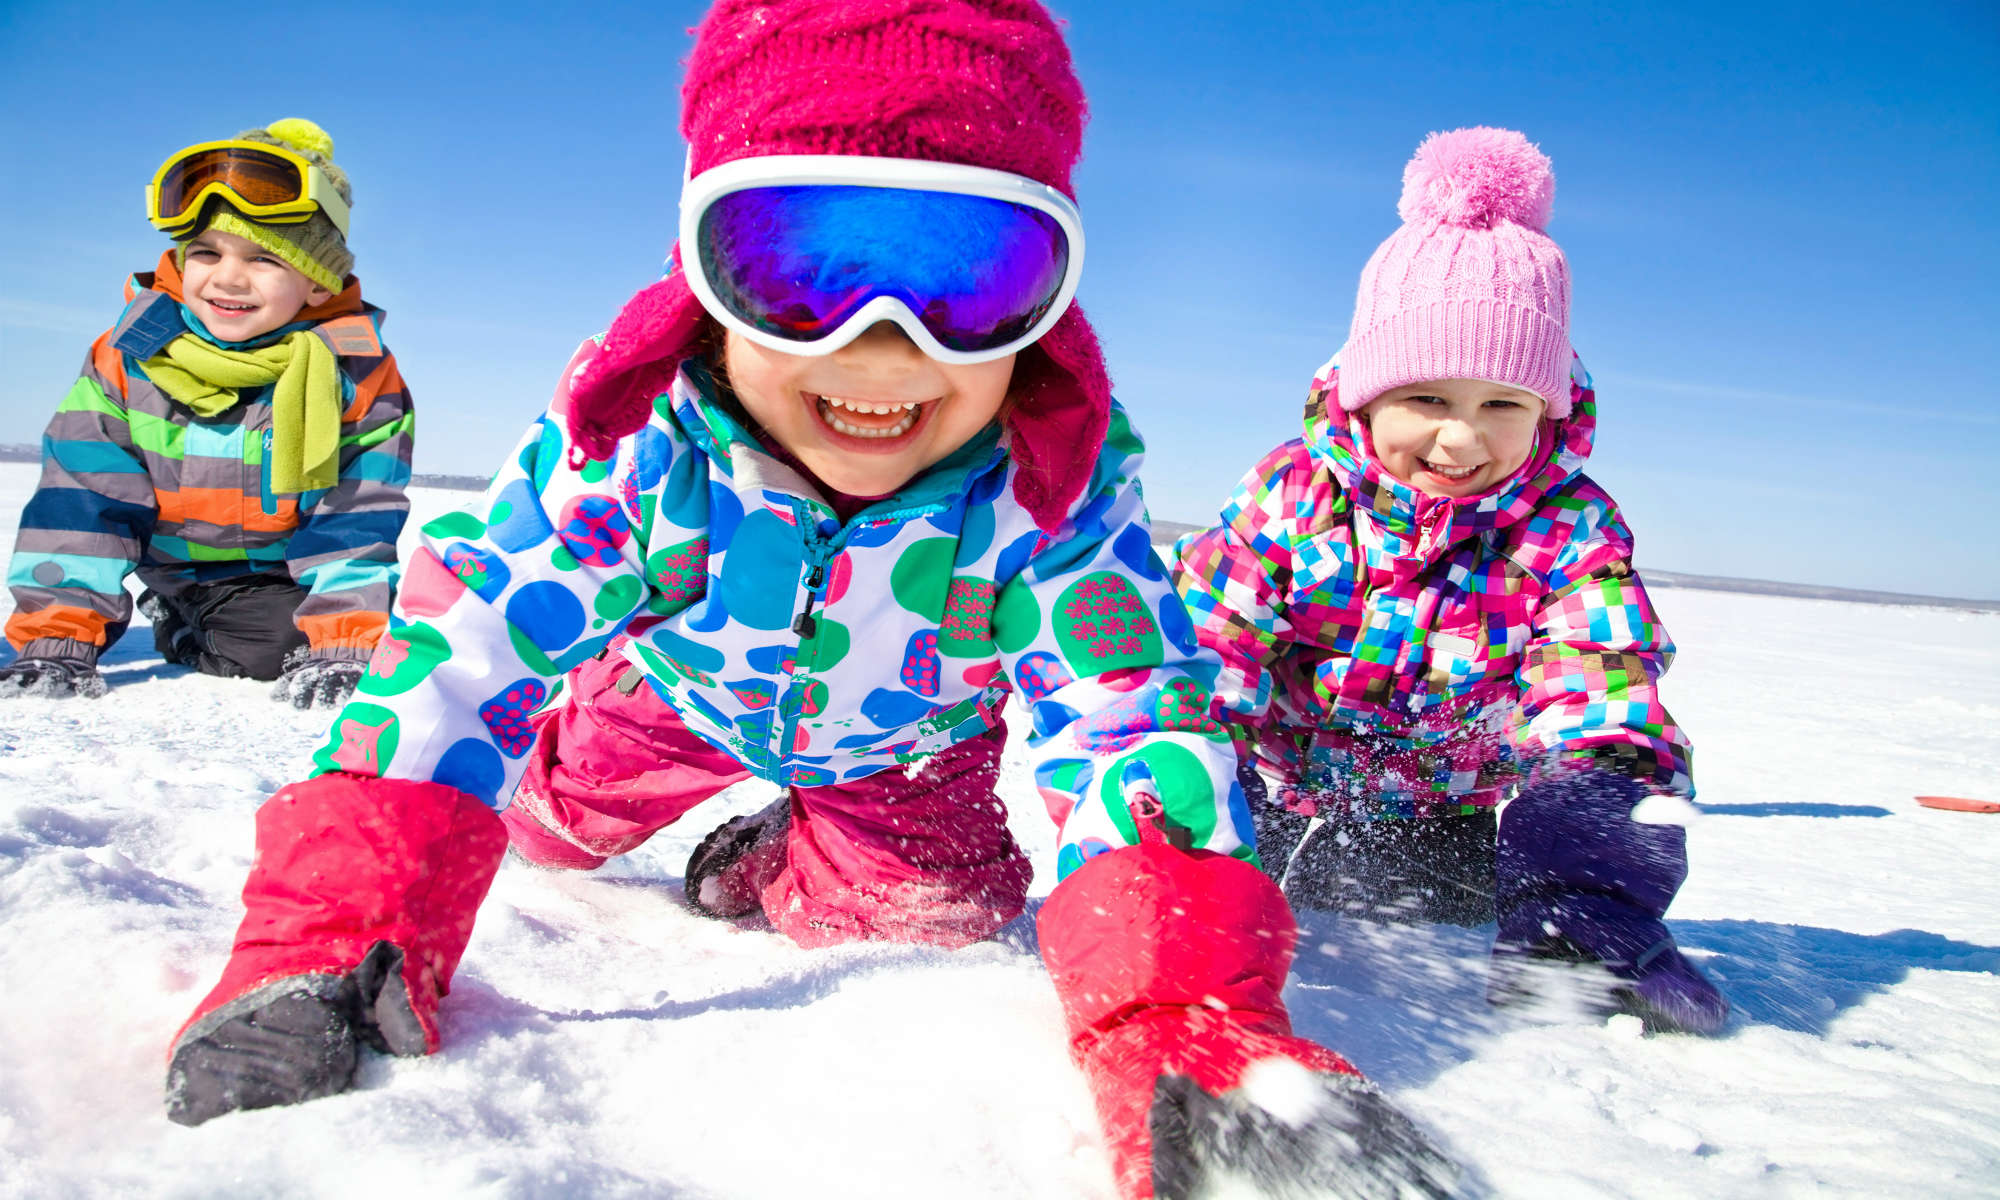 Tre bambini giocano con la neve a Bormio, mentre sorridono verso la macchina fotografica.